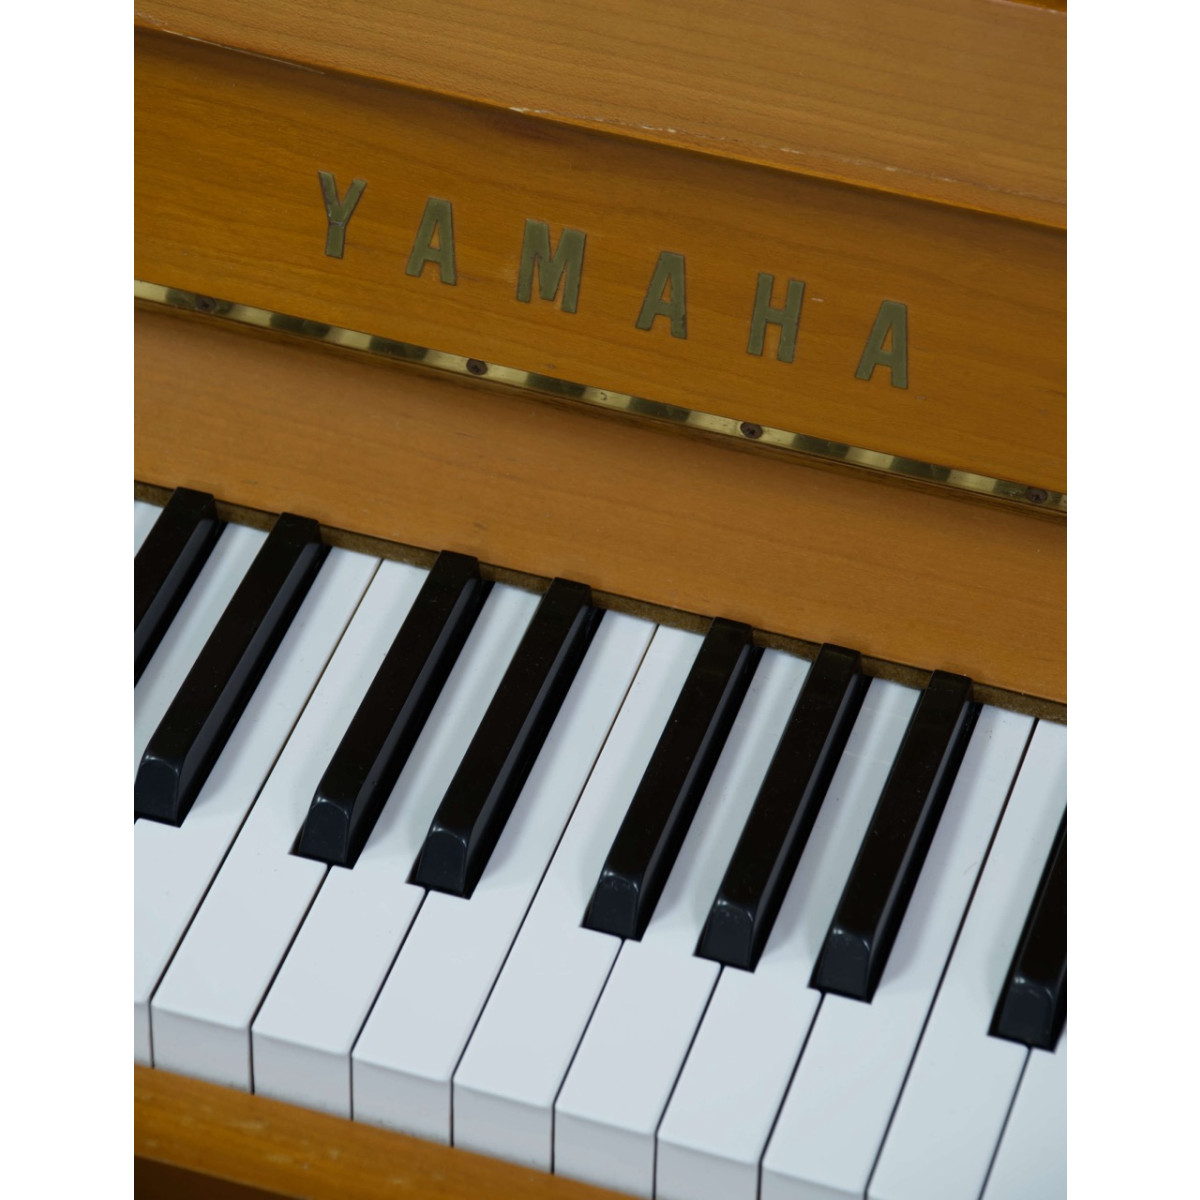 Yamaha U1 N Klavier, Holzoberfläche Kirschbaum, gebraucht kaufen bei Pianelli, Ansicht: Klaviatur nah